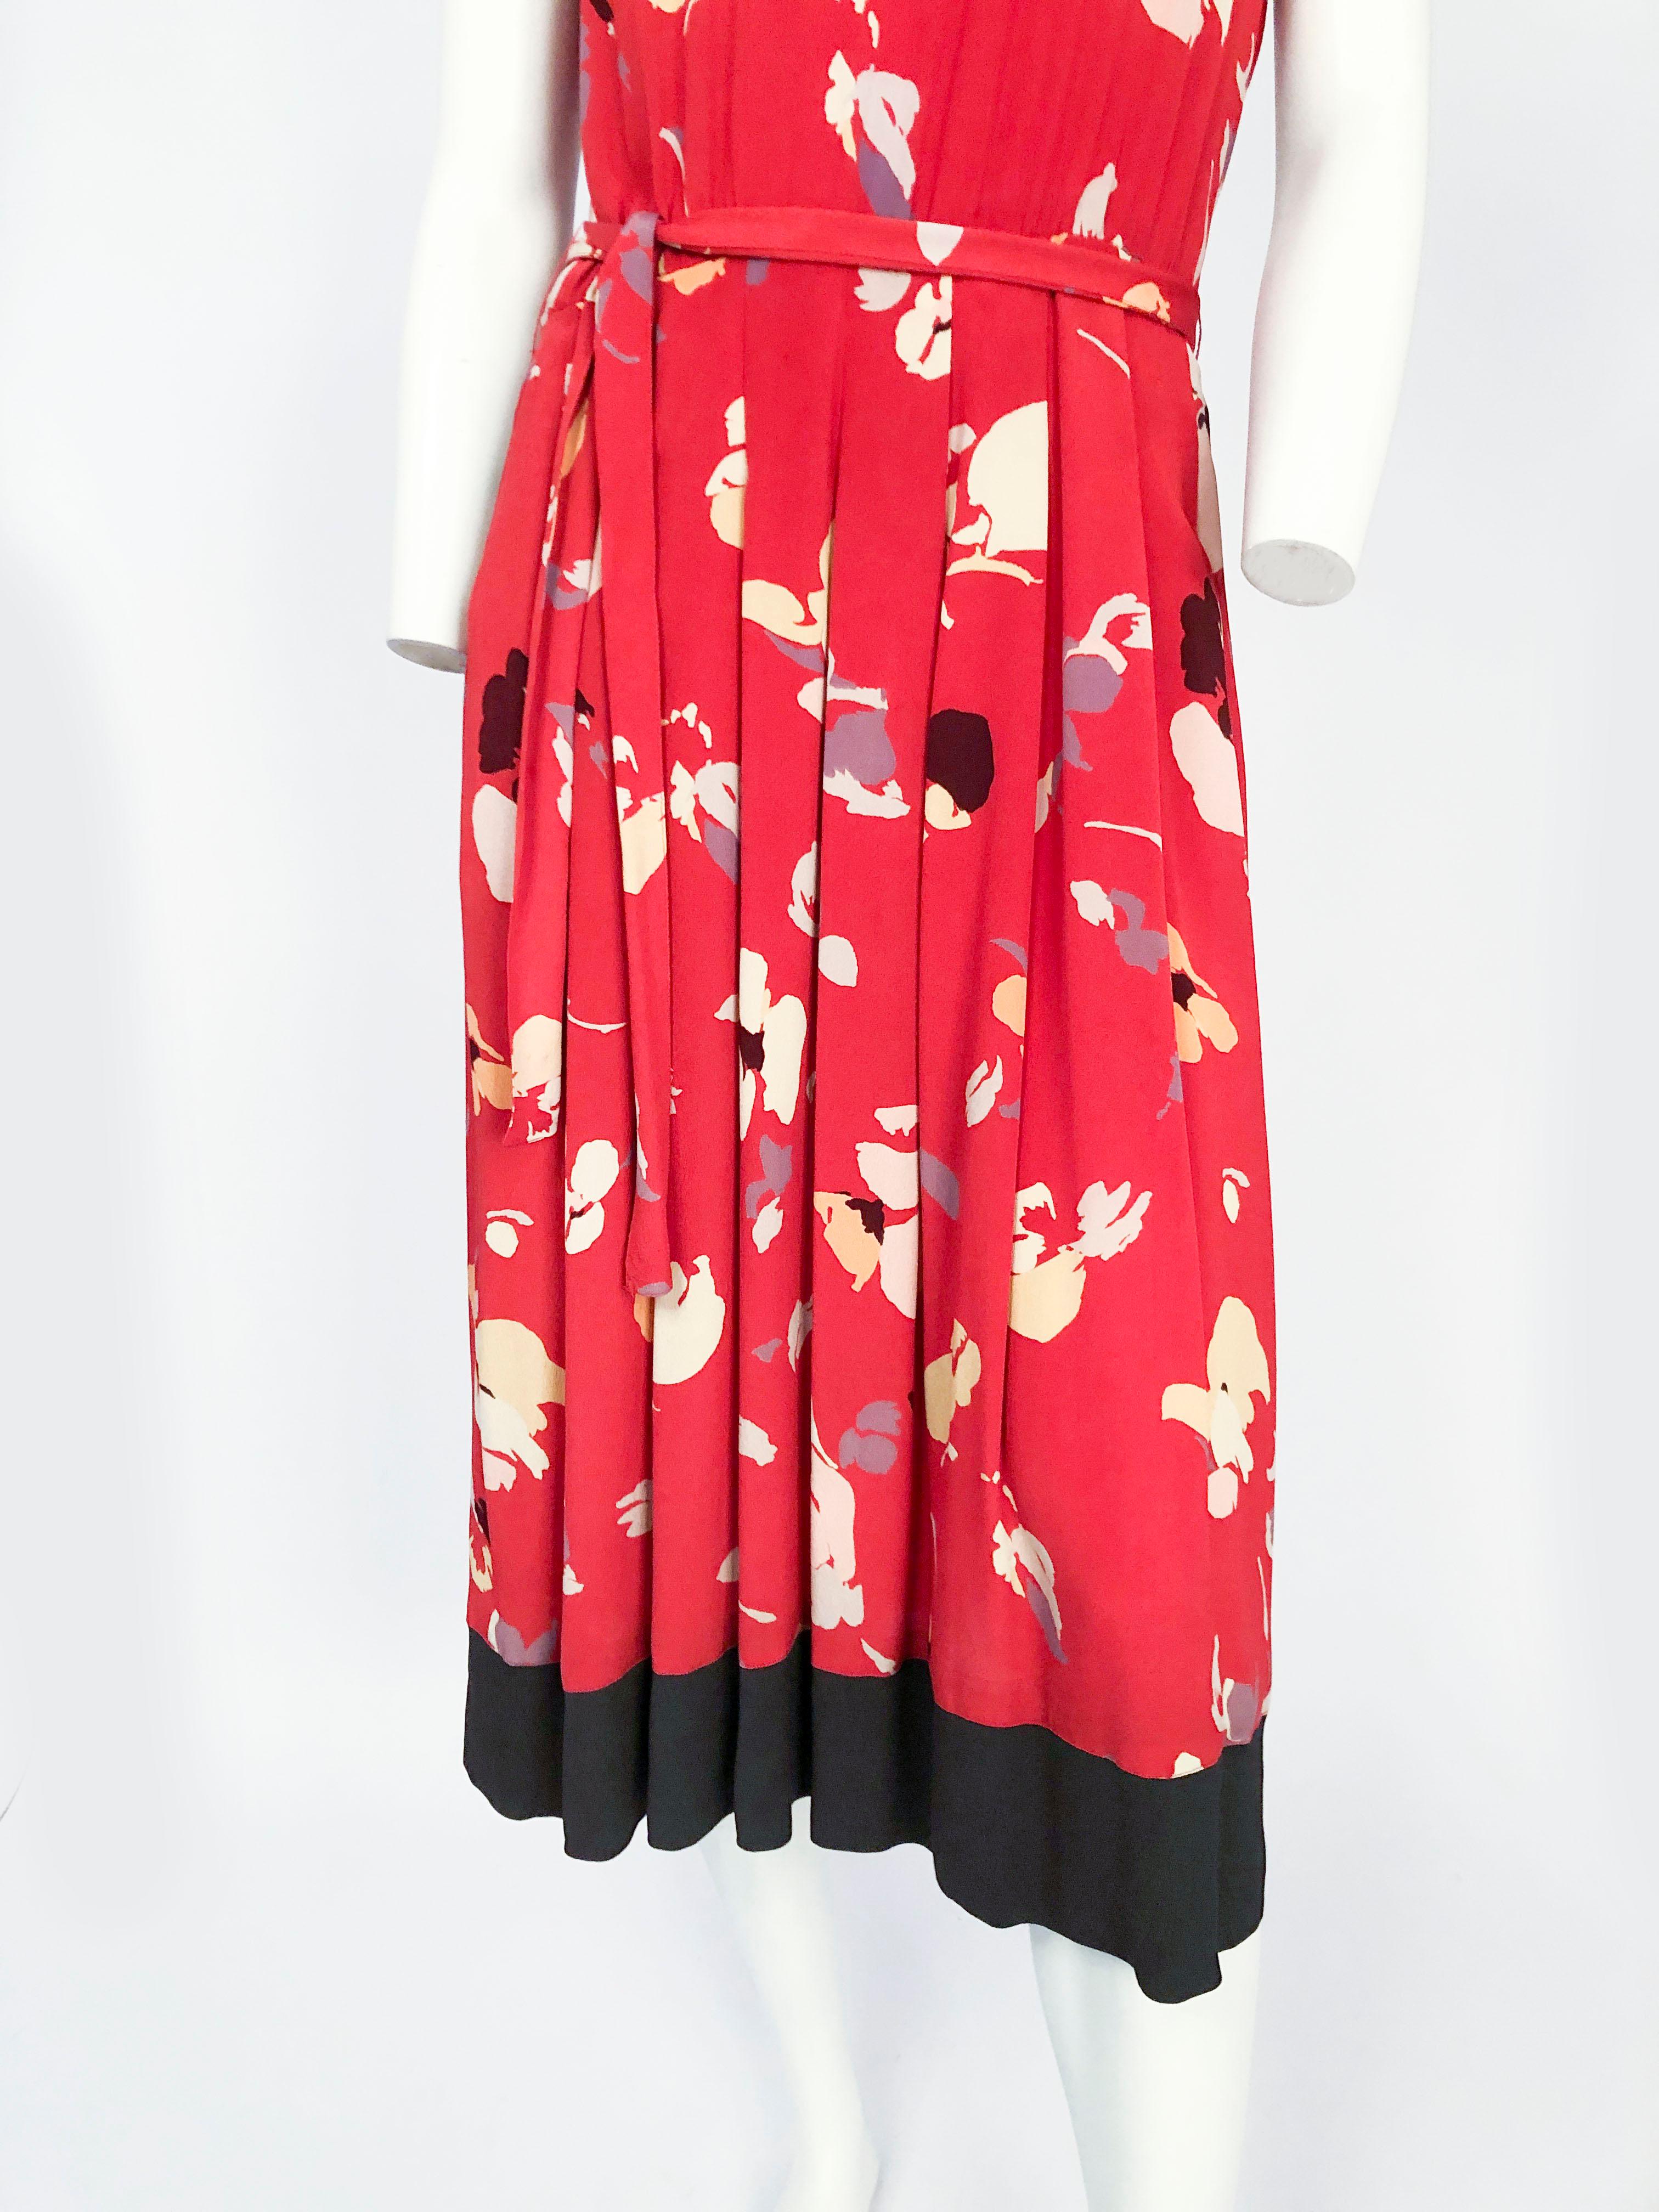 robe imprimée rouge Nipon des années 1980 avec motif impressionniste, encolure bateau modifiée, bordure noire sur les manches, l'encolure et l'ourlet. Ceinture assortie, plis au couteau sur la jupe et fermeture à glissière/bouton au dos de la robe.